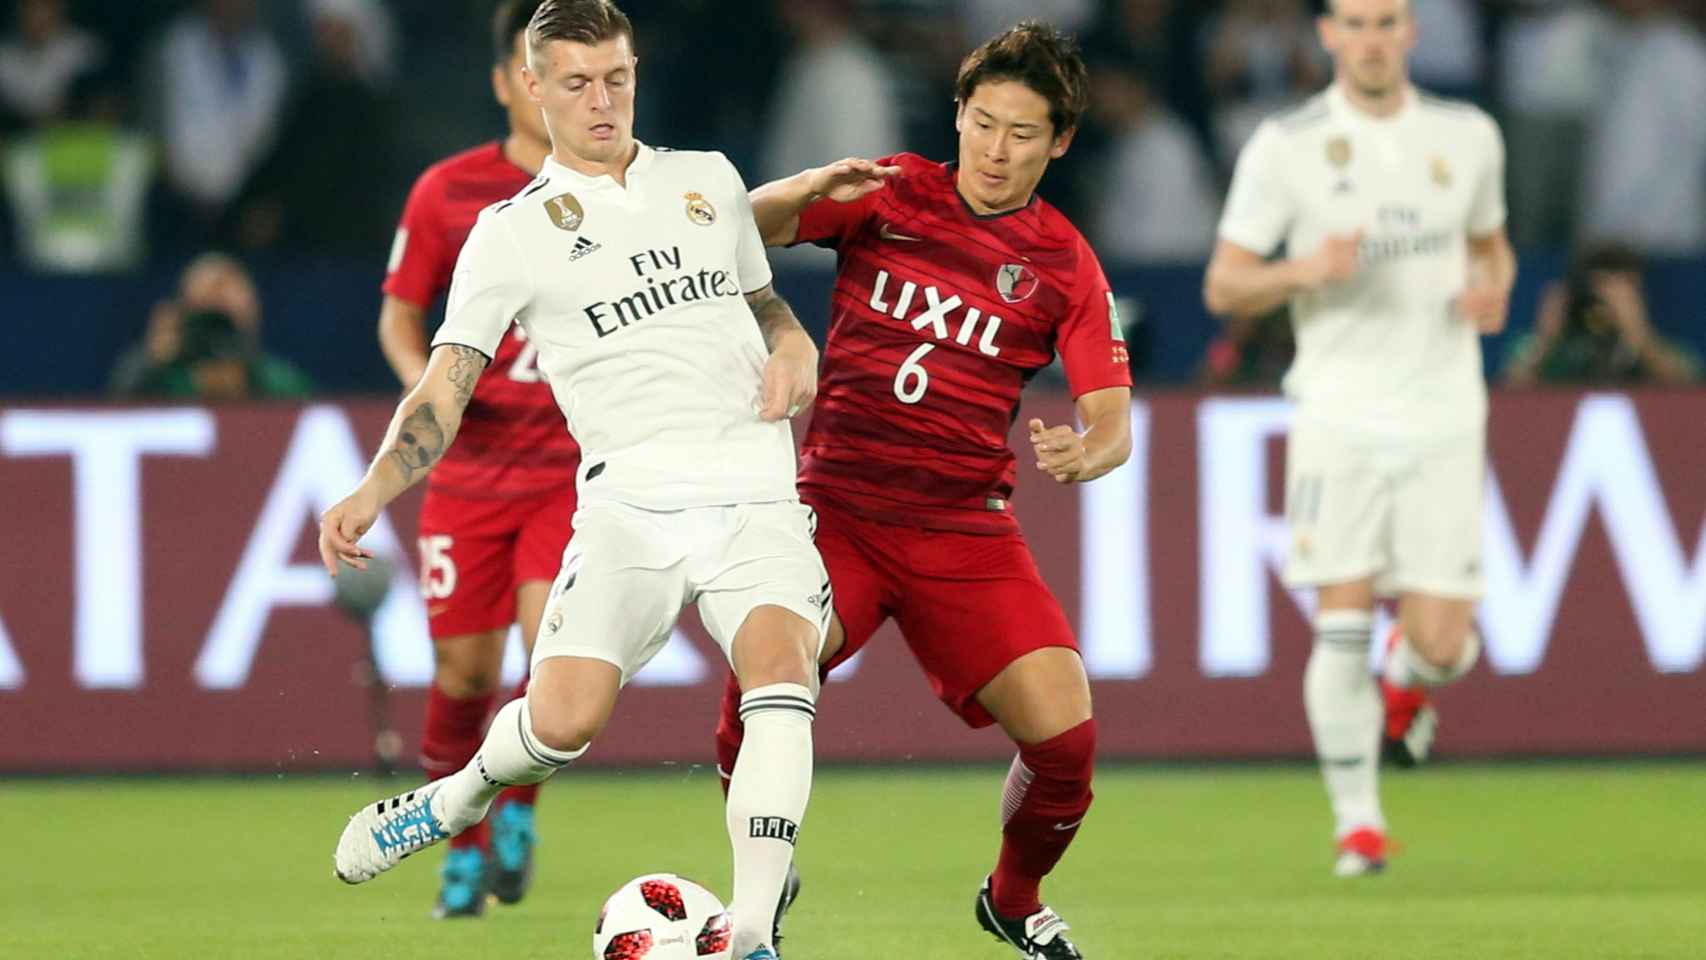 Toni Kroos disputa el balón con Ryota Nagaki